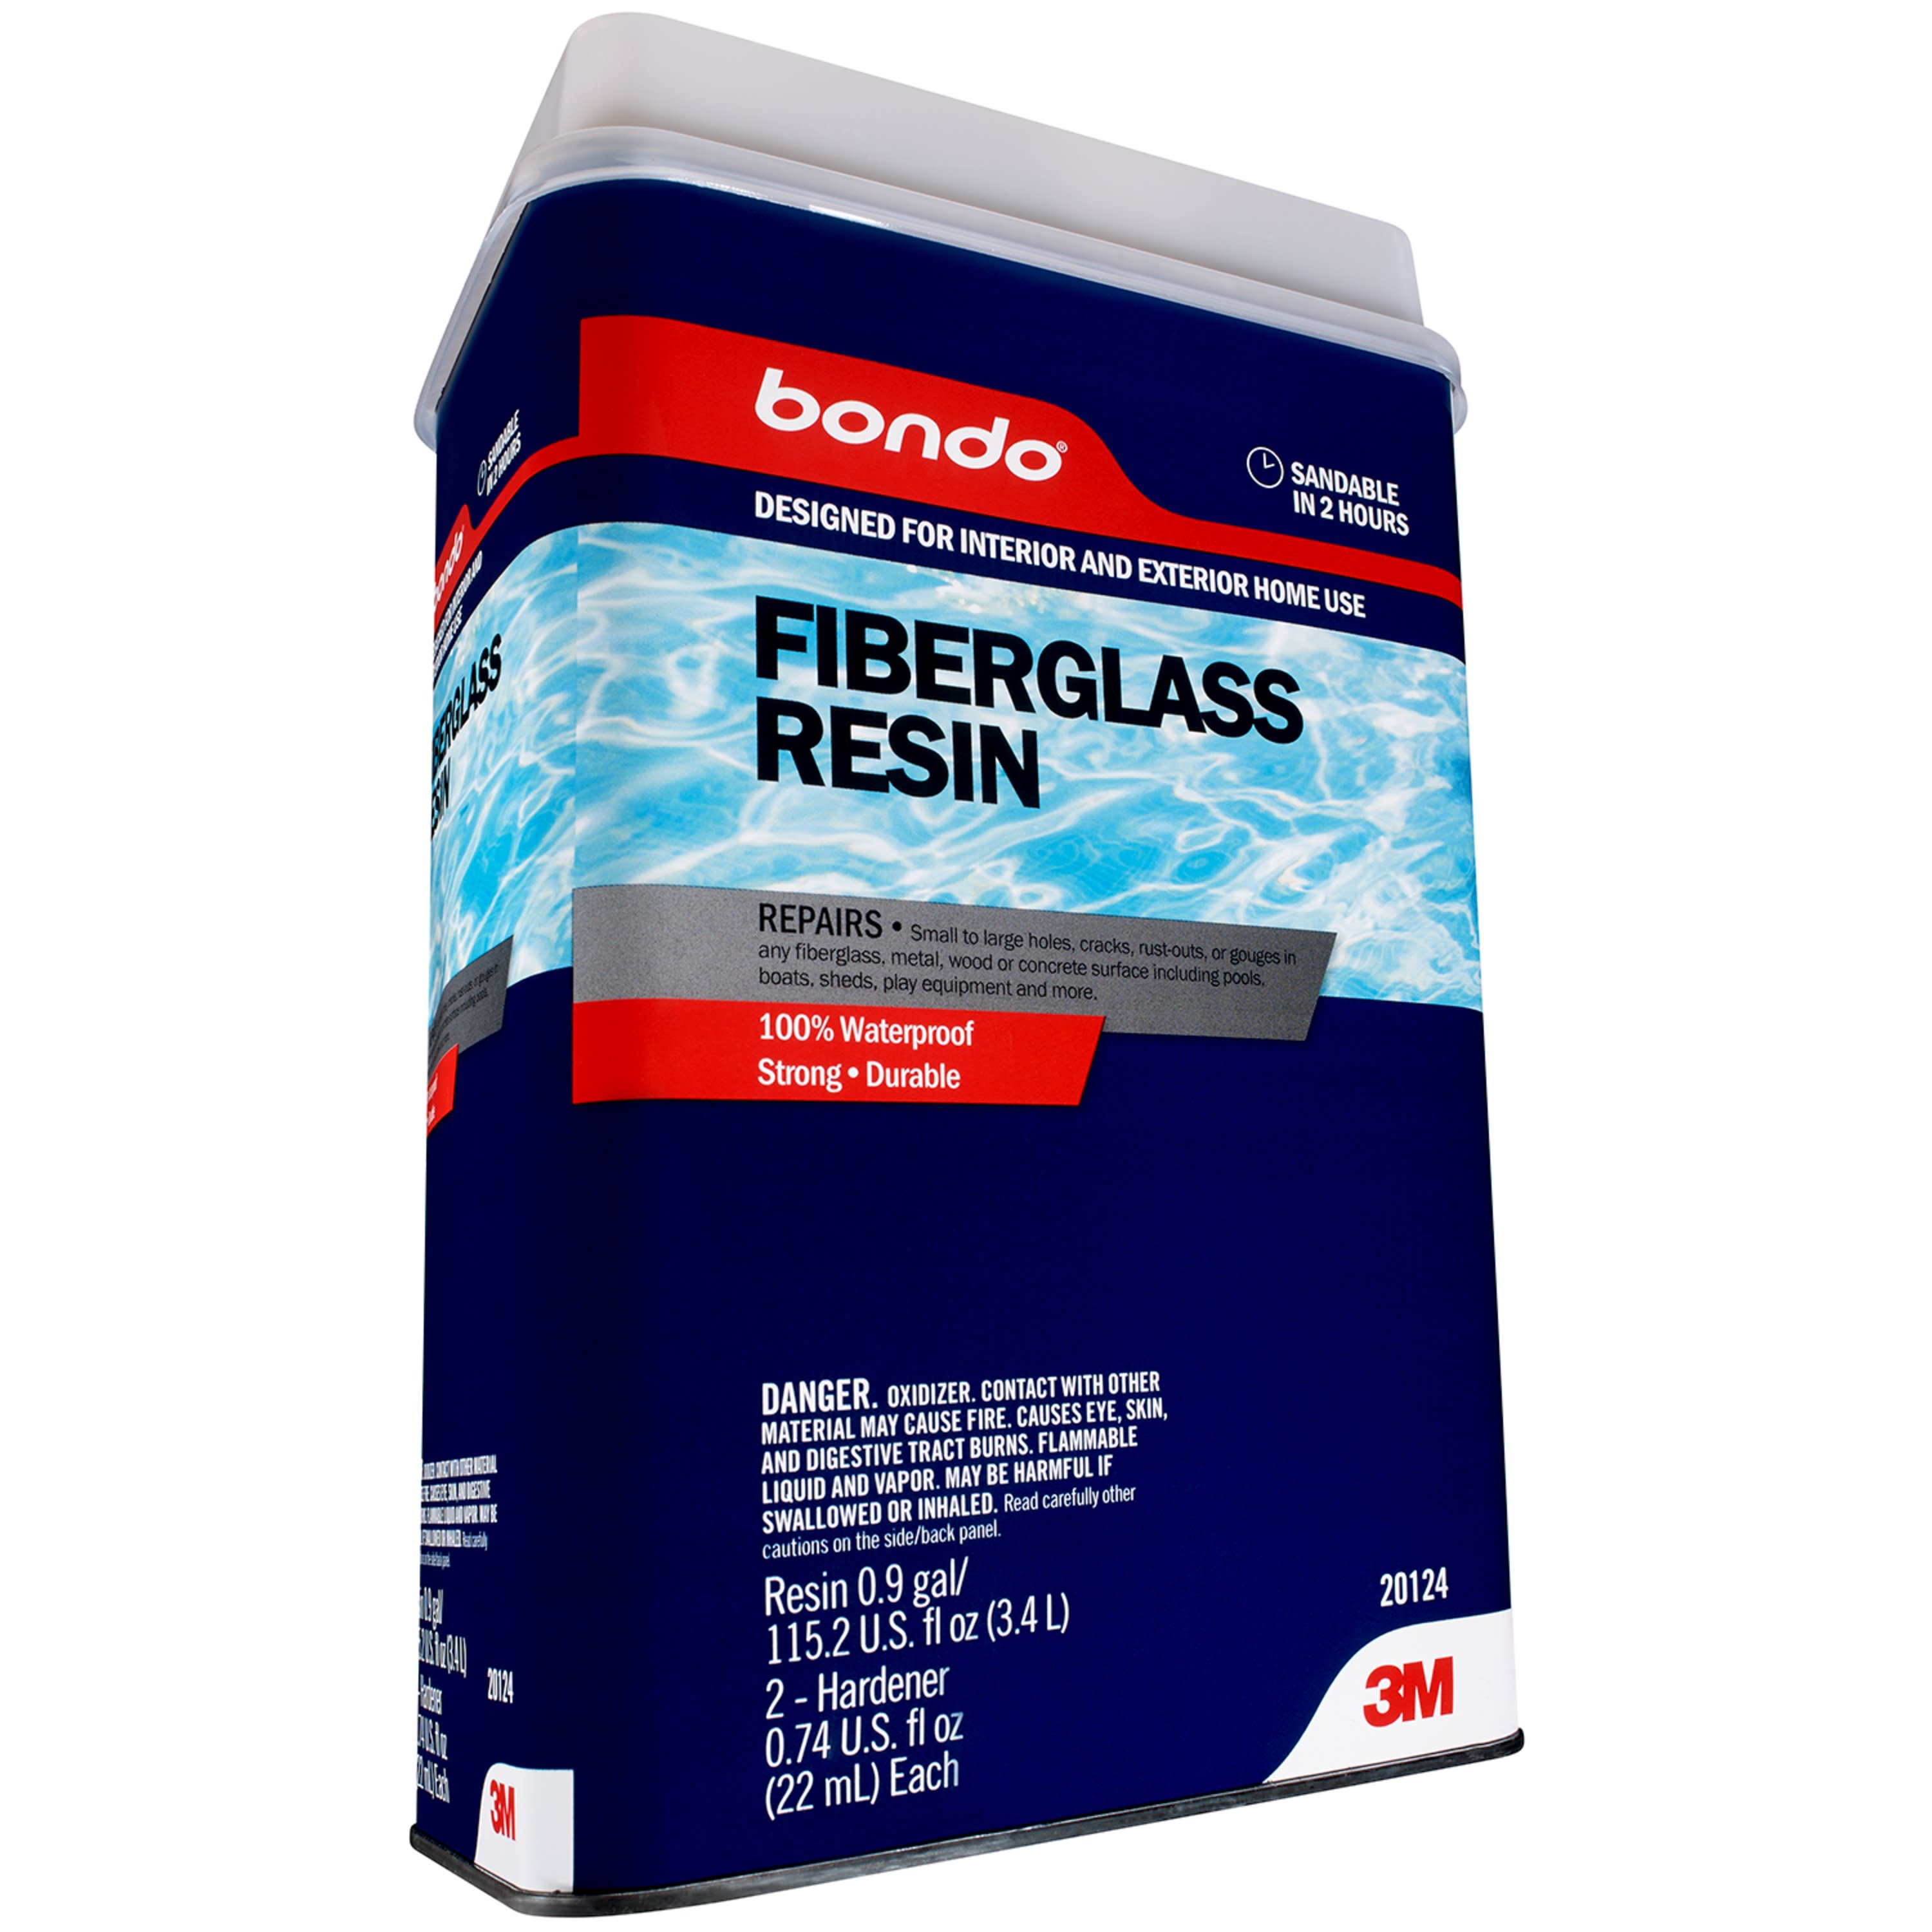 Reviews for Bondo 8 oz. Fiberglass Resin Repair Kit